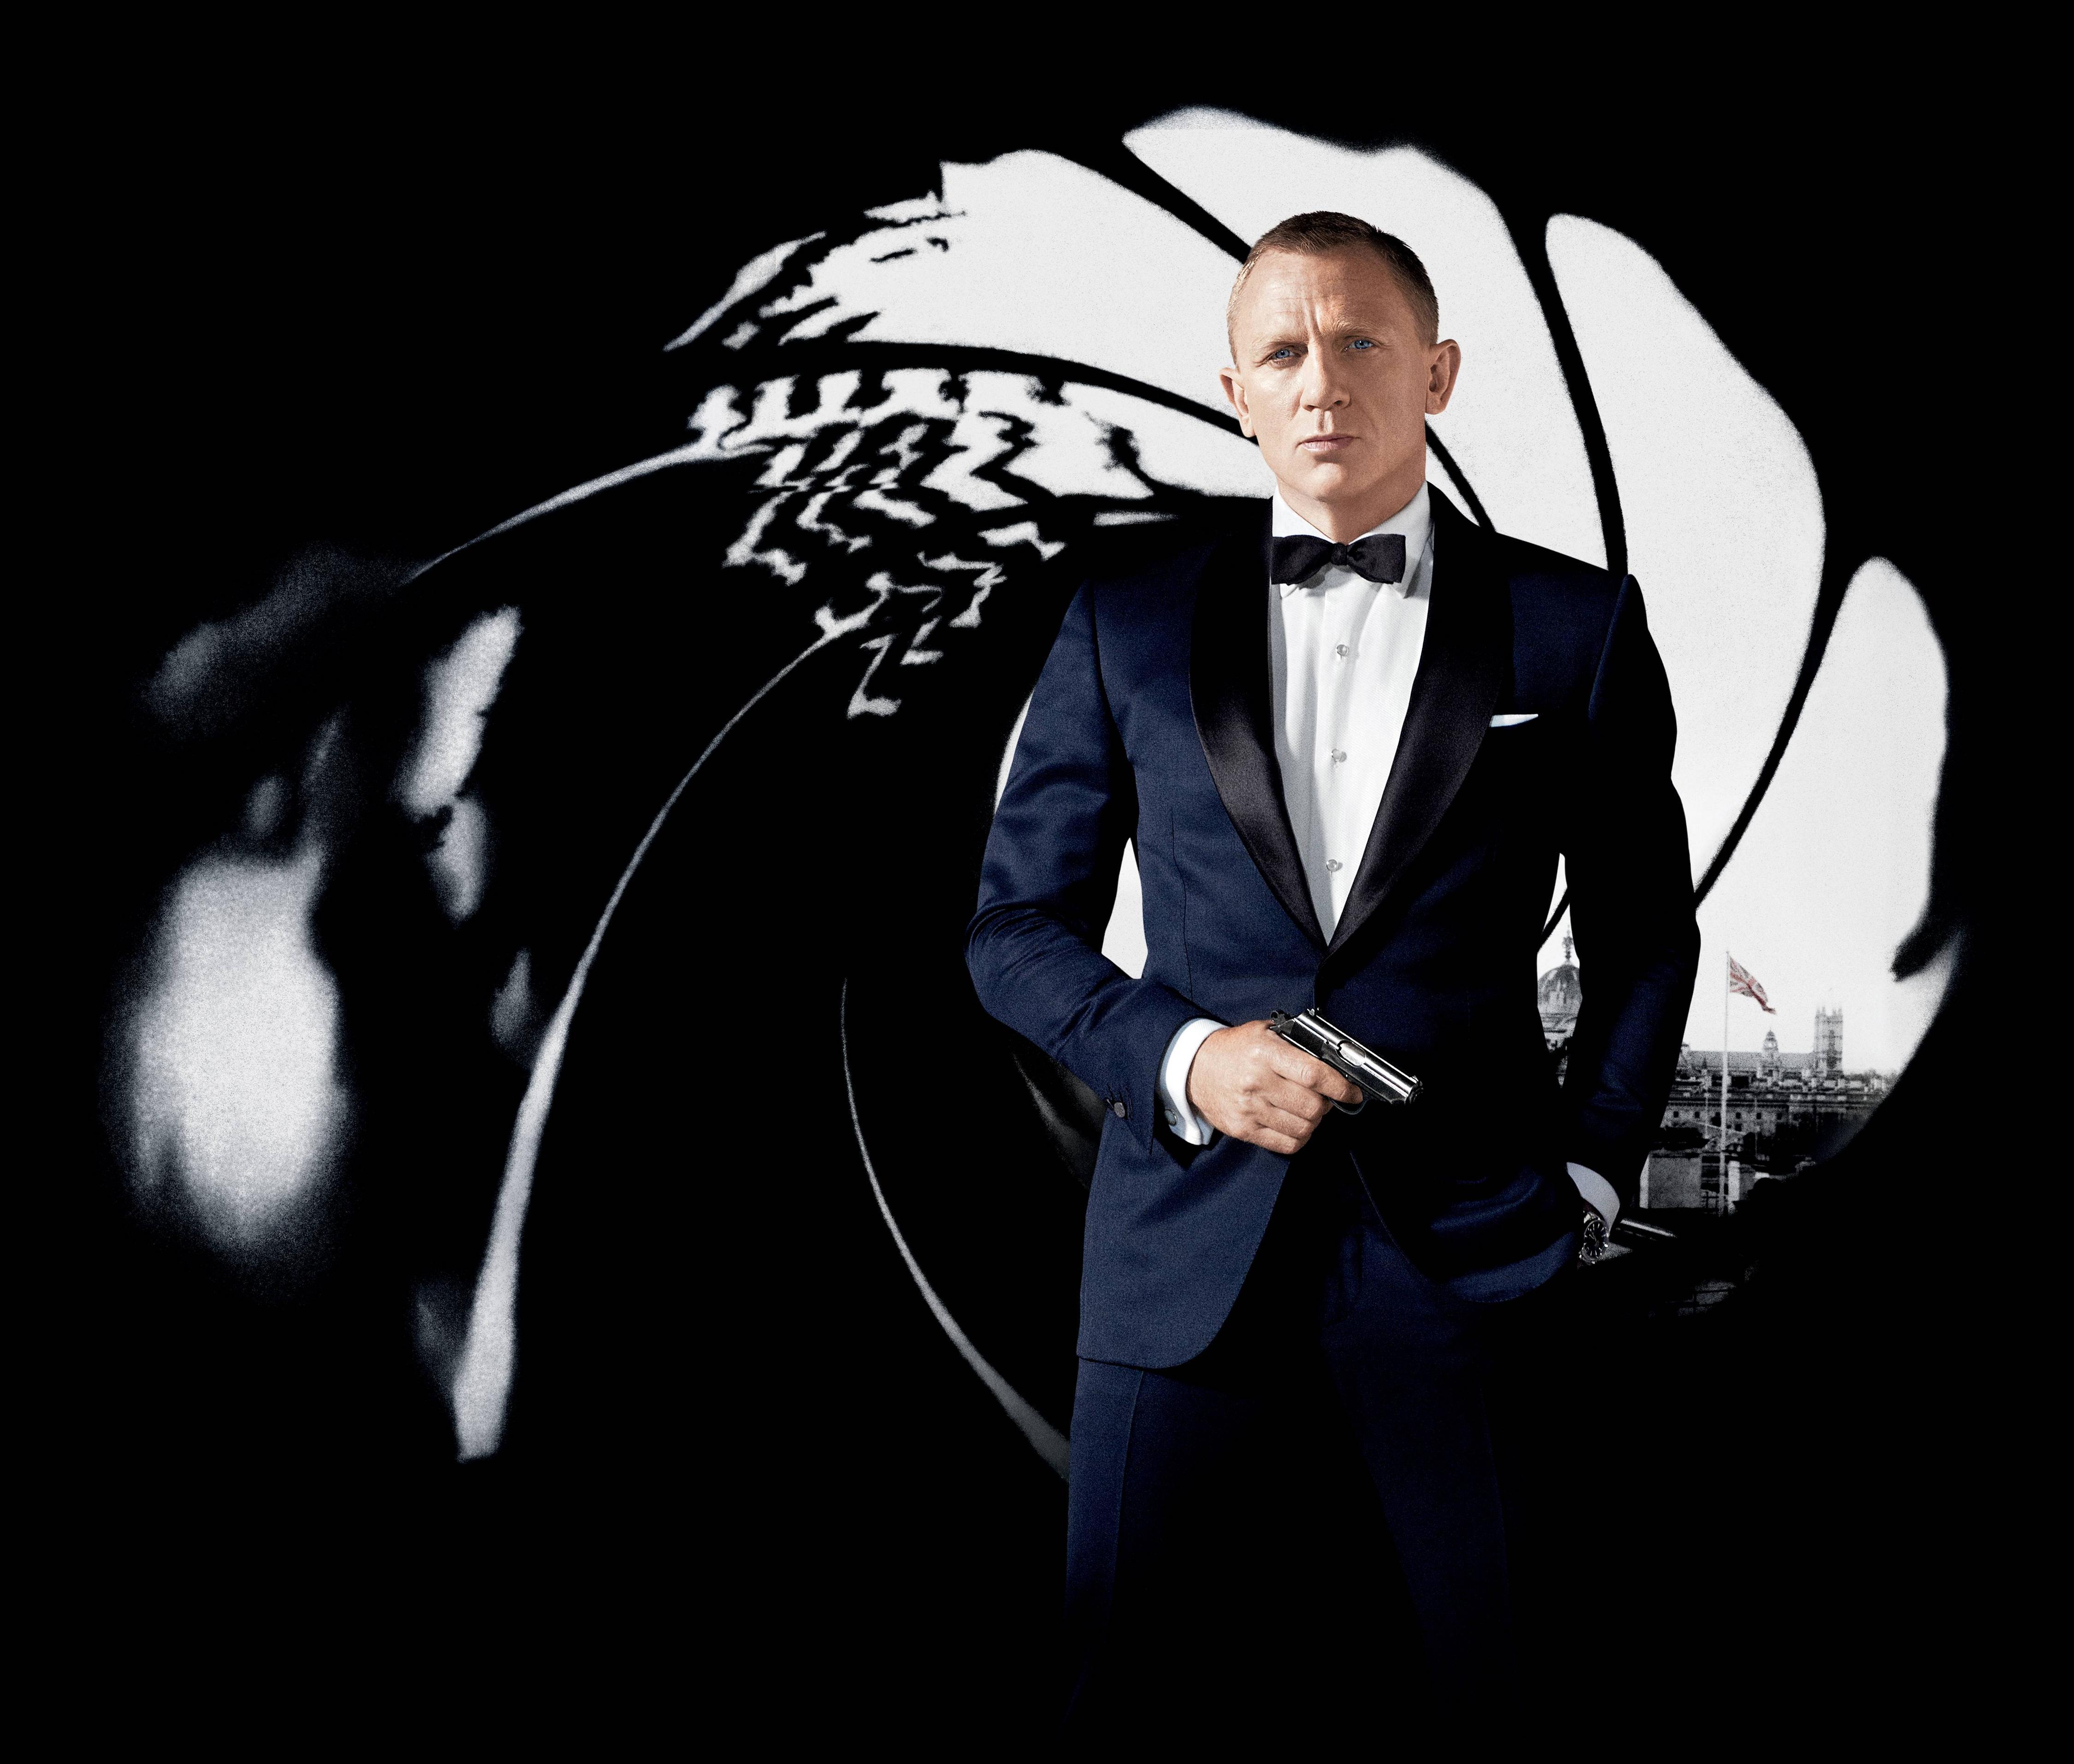 HD Daniel Craig Wallpapers - Top Free HD Daniel Craig Backgrounds ...